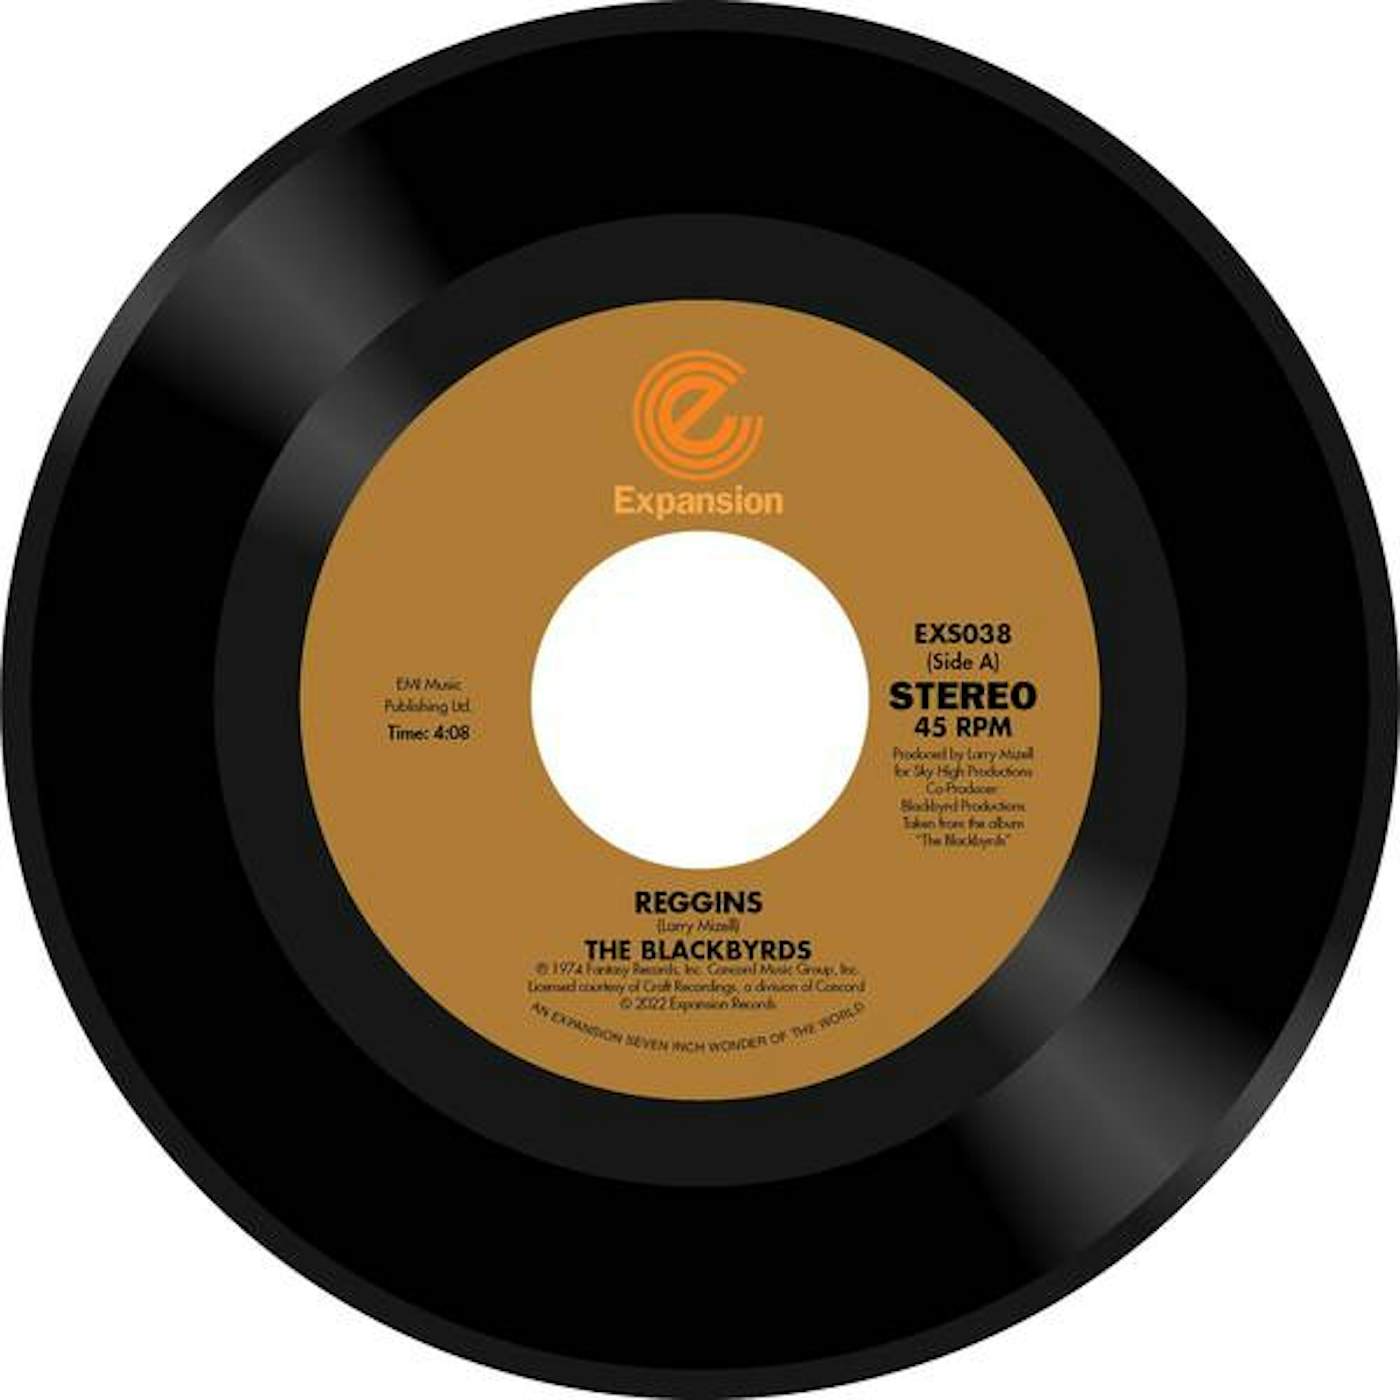 Reggins / The Blackbyrds Theme Vinyl Record